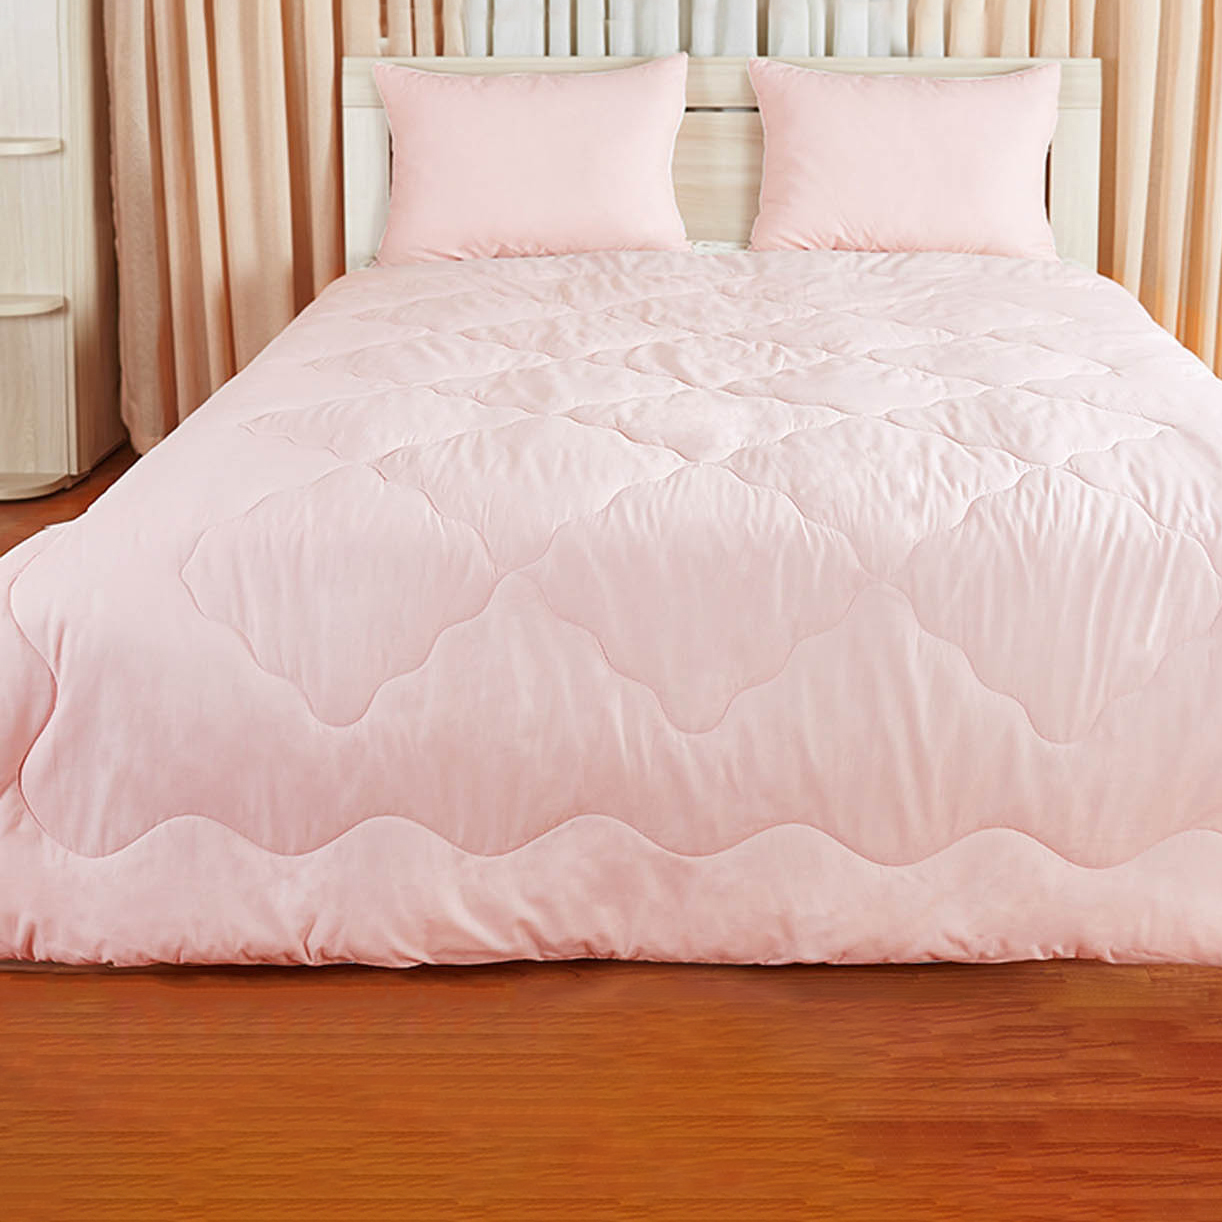 Одеяло Debby Цвет: Розовый (140х205 см), размер 140х205 см pdo319273 Одеяло Debby Цвет: Розовый (140х205 см) - фото 1